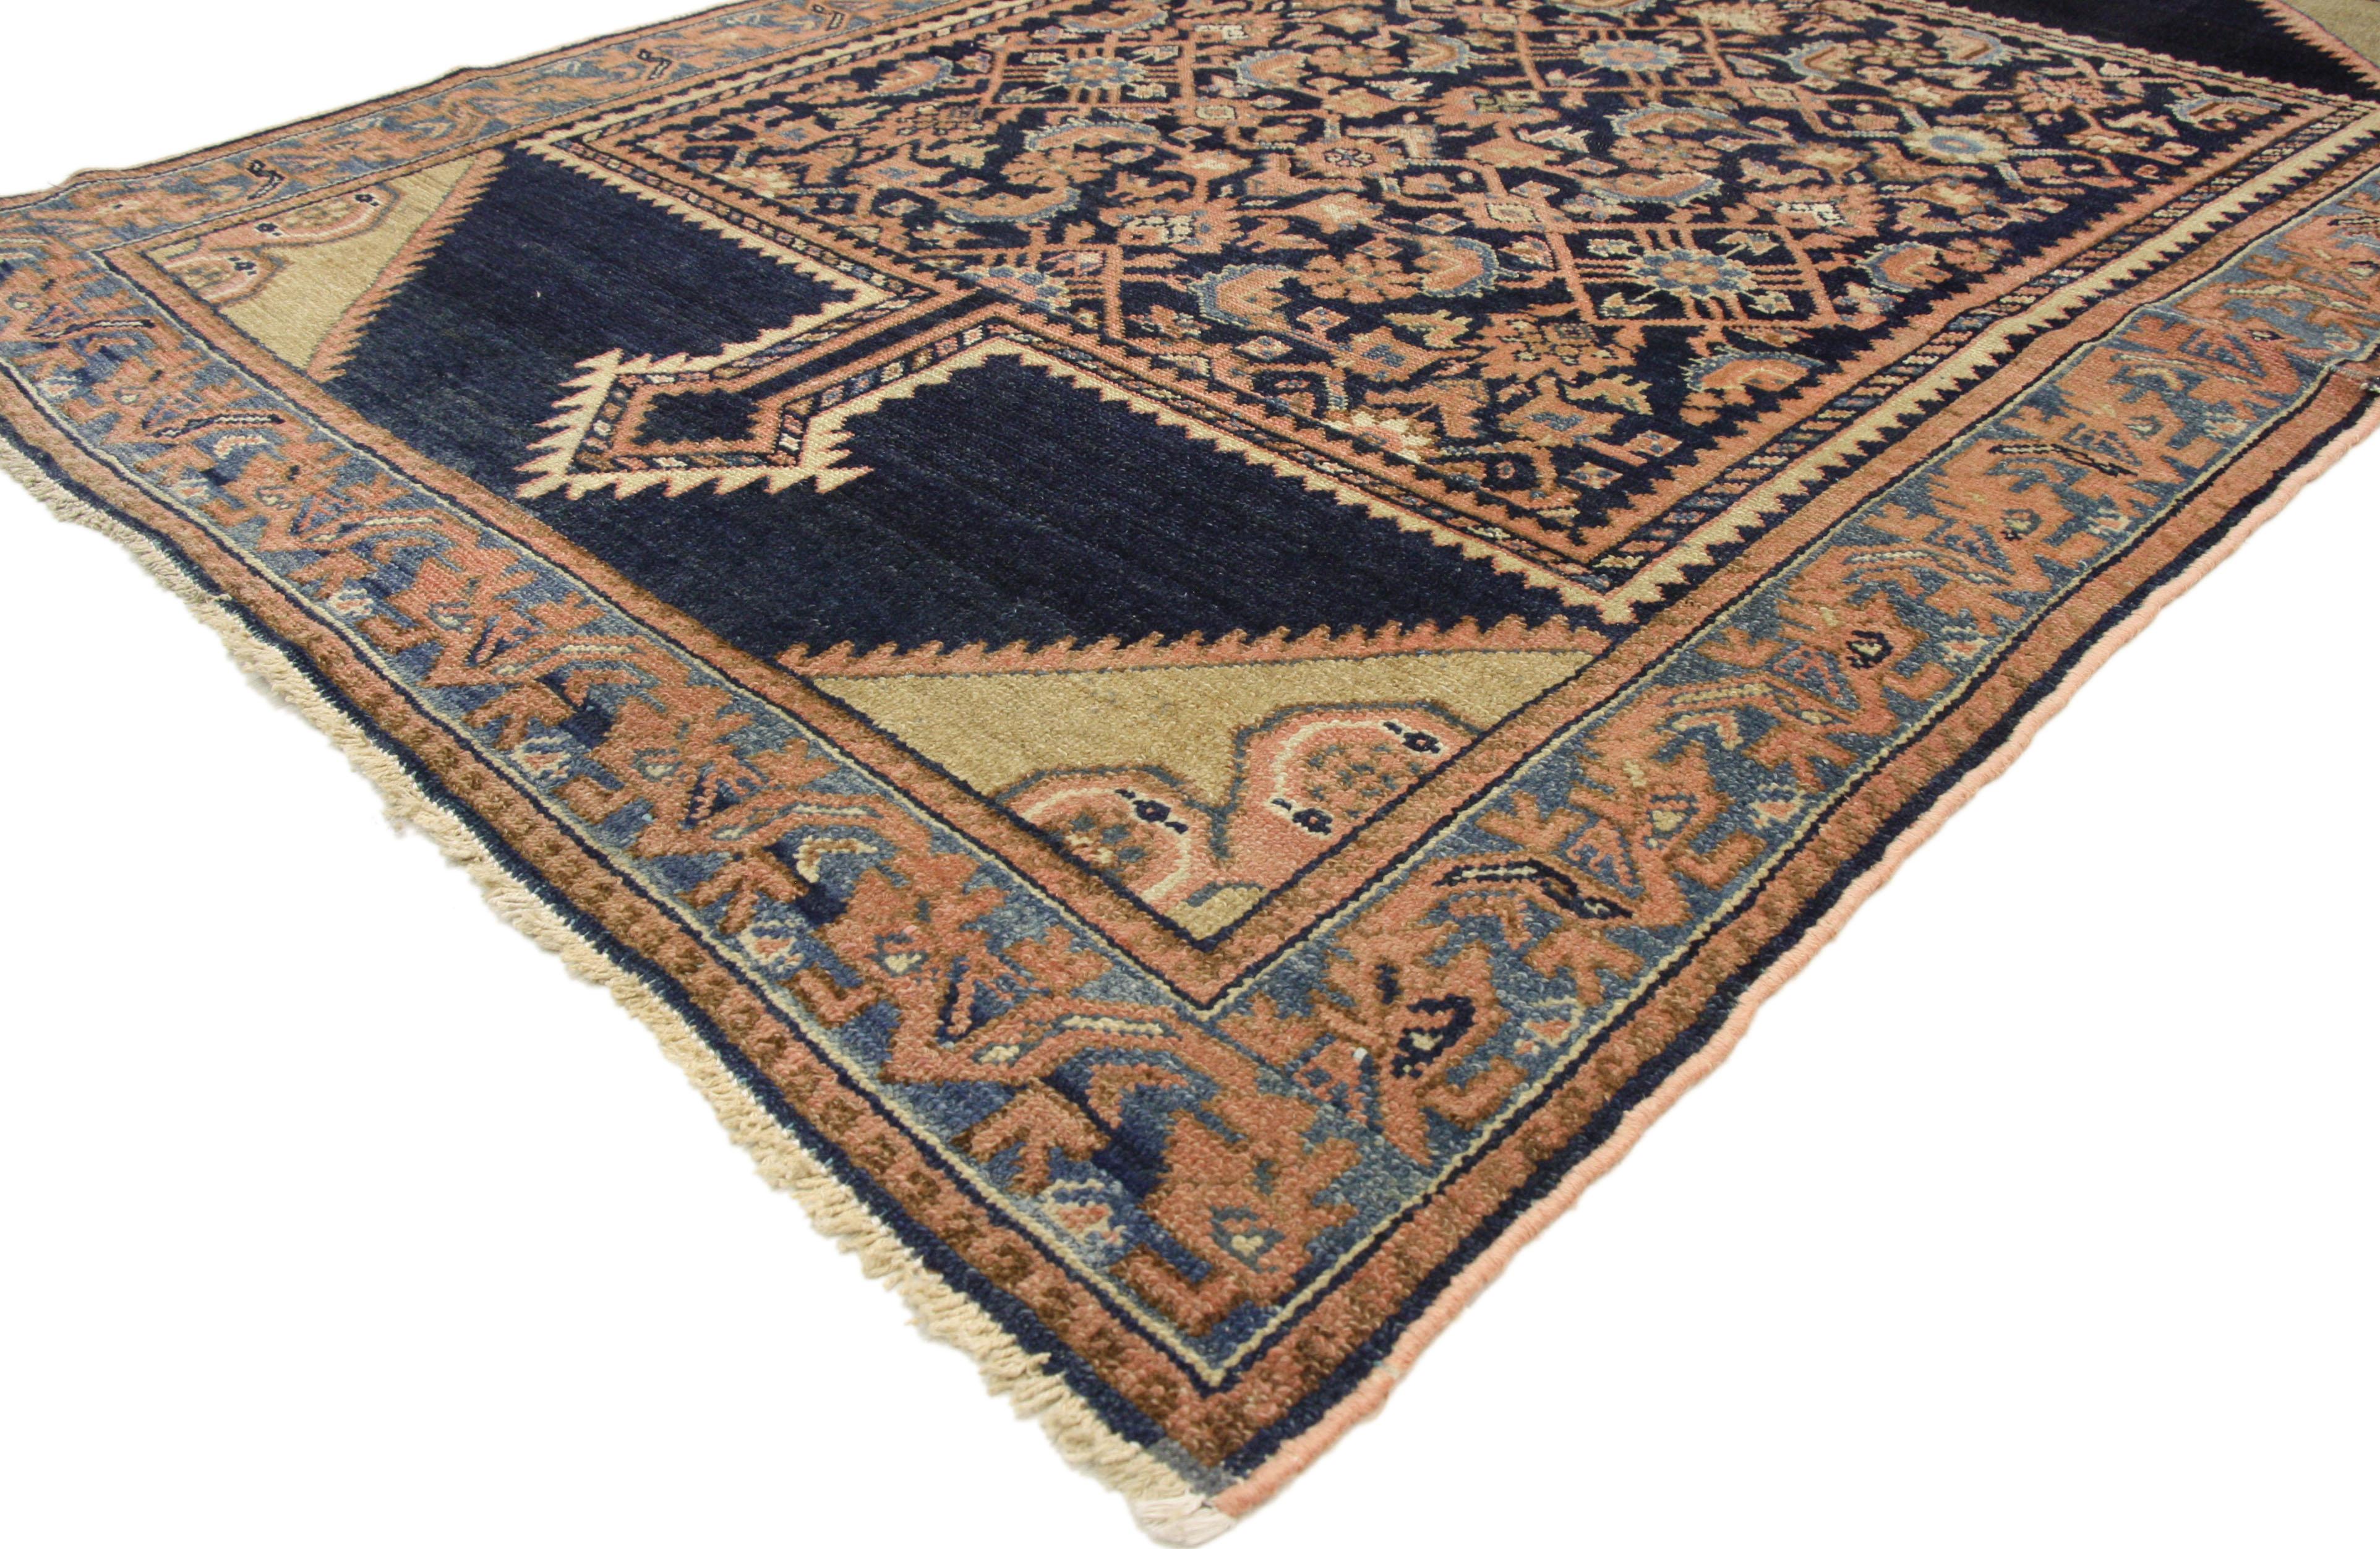 72588 Antiker persischer Malayer-Teppich im rustikal-romantischen georgianischen Stil. Eine schöne Kombination aus rustikalen Rosatönen und sanften Blautönen in diesem handgeknüpften antiken persischen Malayer-Teppich aus Wolle schafft ein zartes